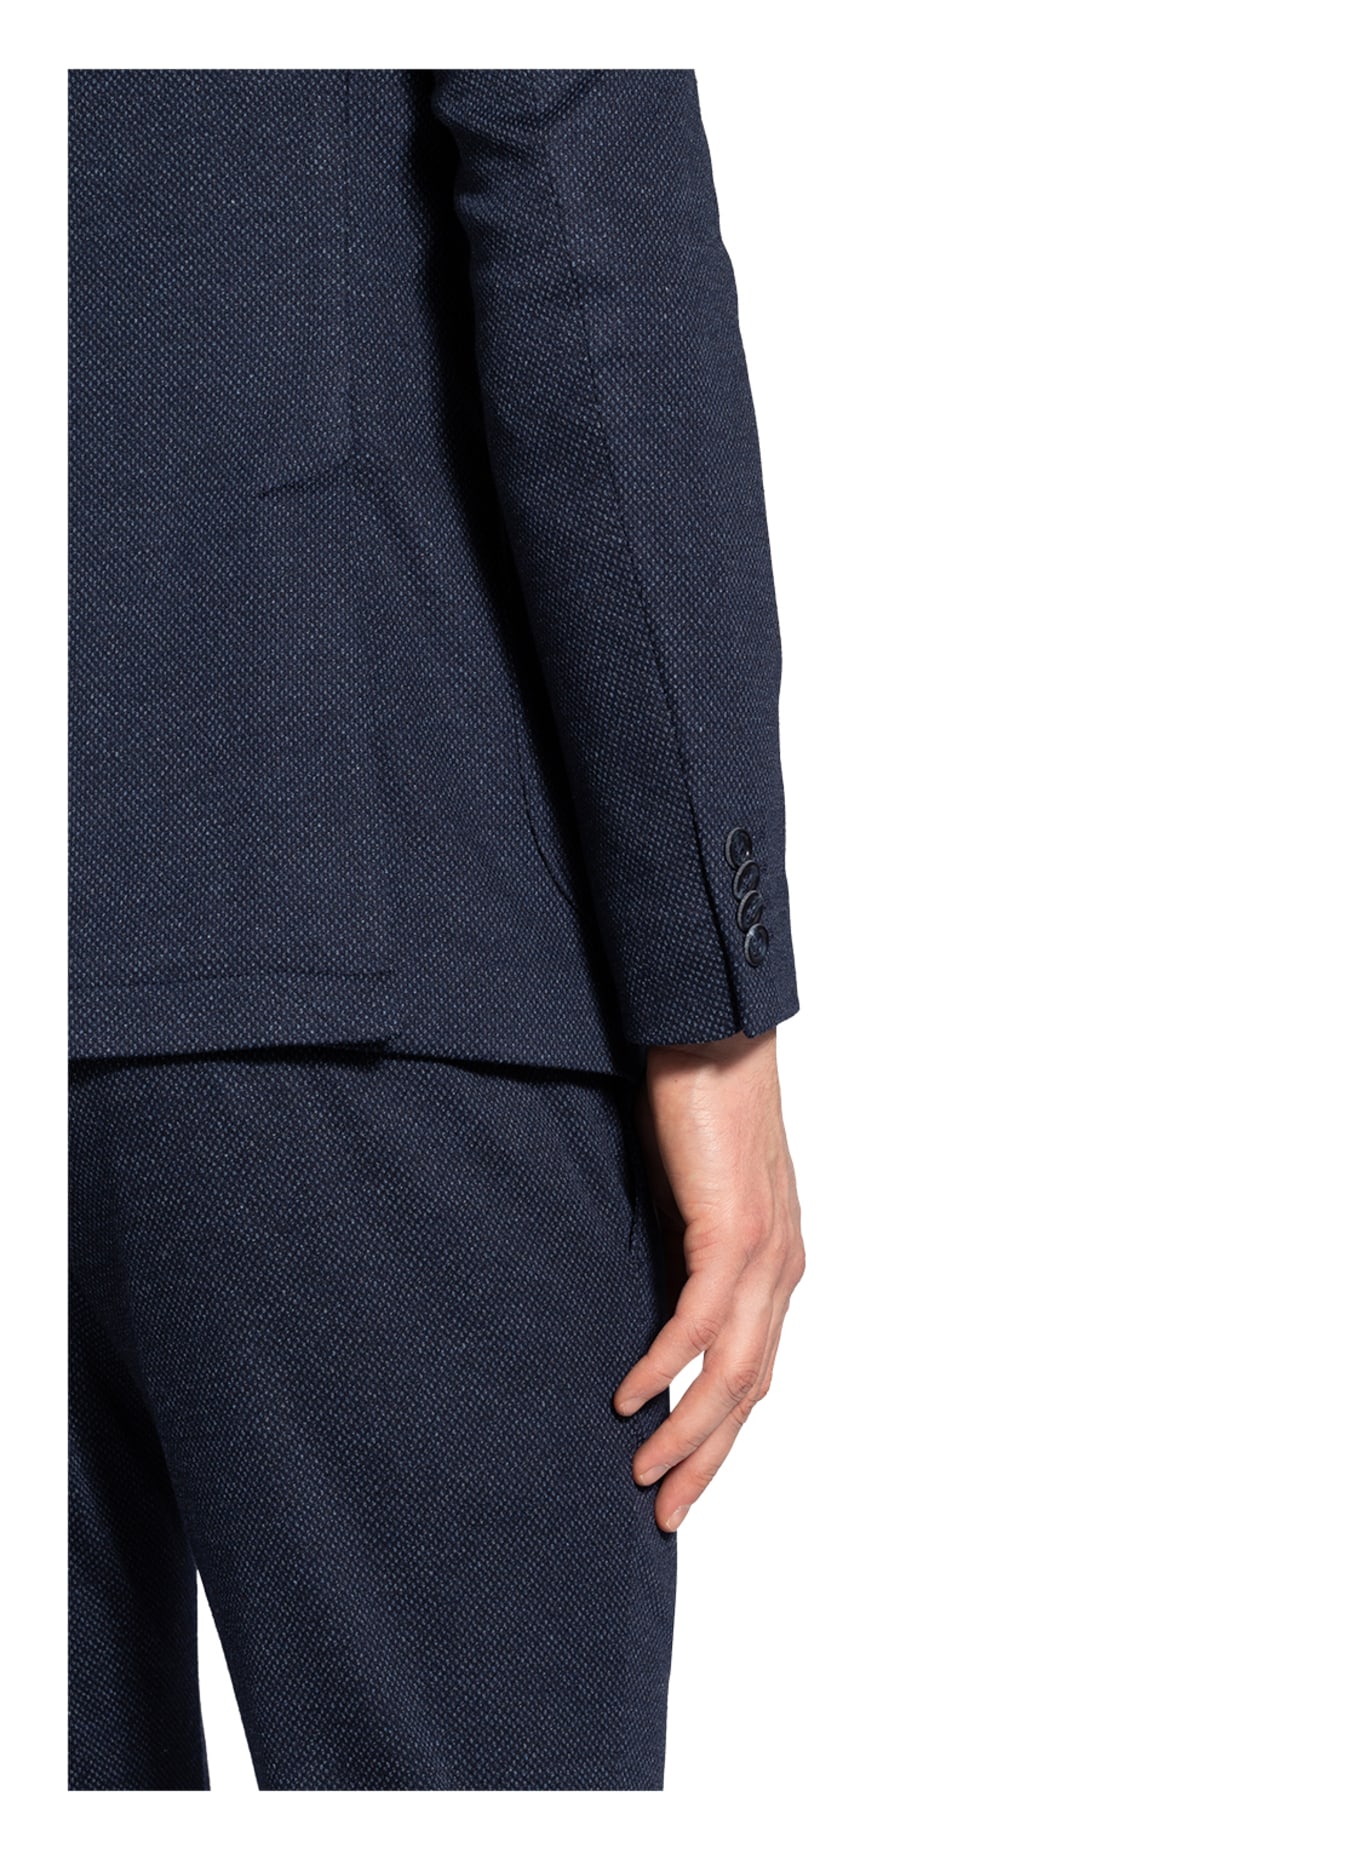 PAUL Suit jacket Slim Fit , Color: 650 NAVY (Image 6)